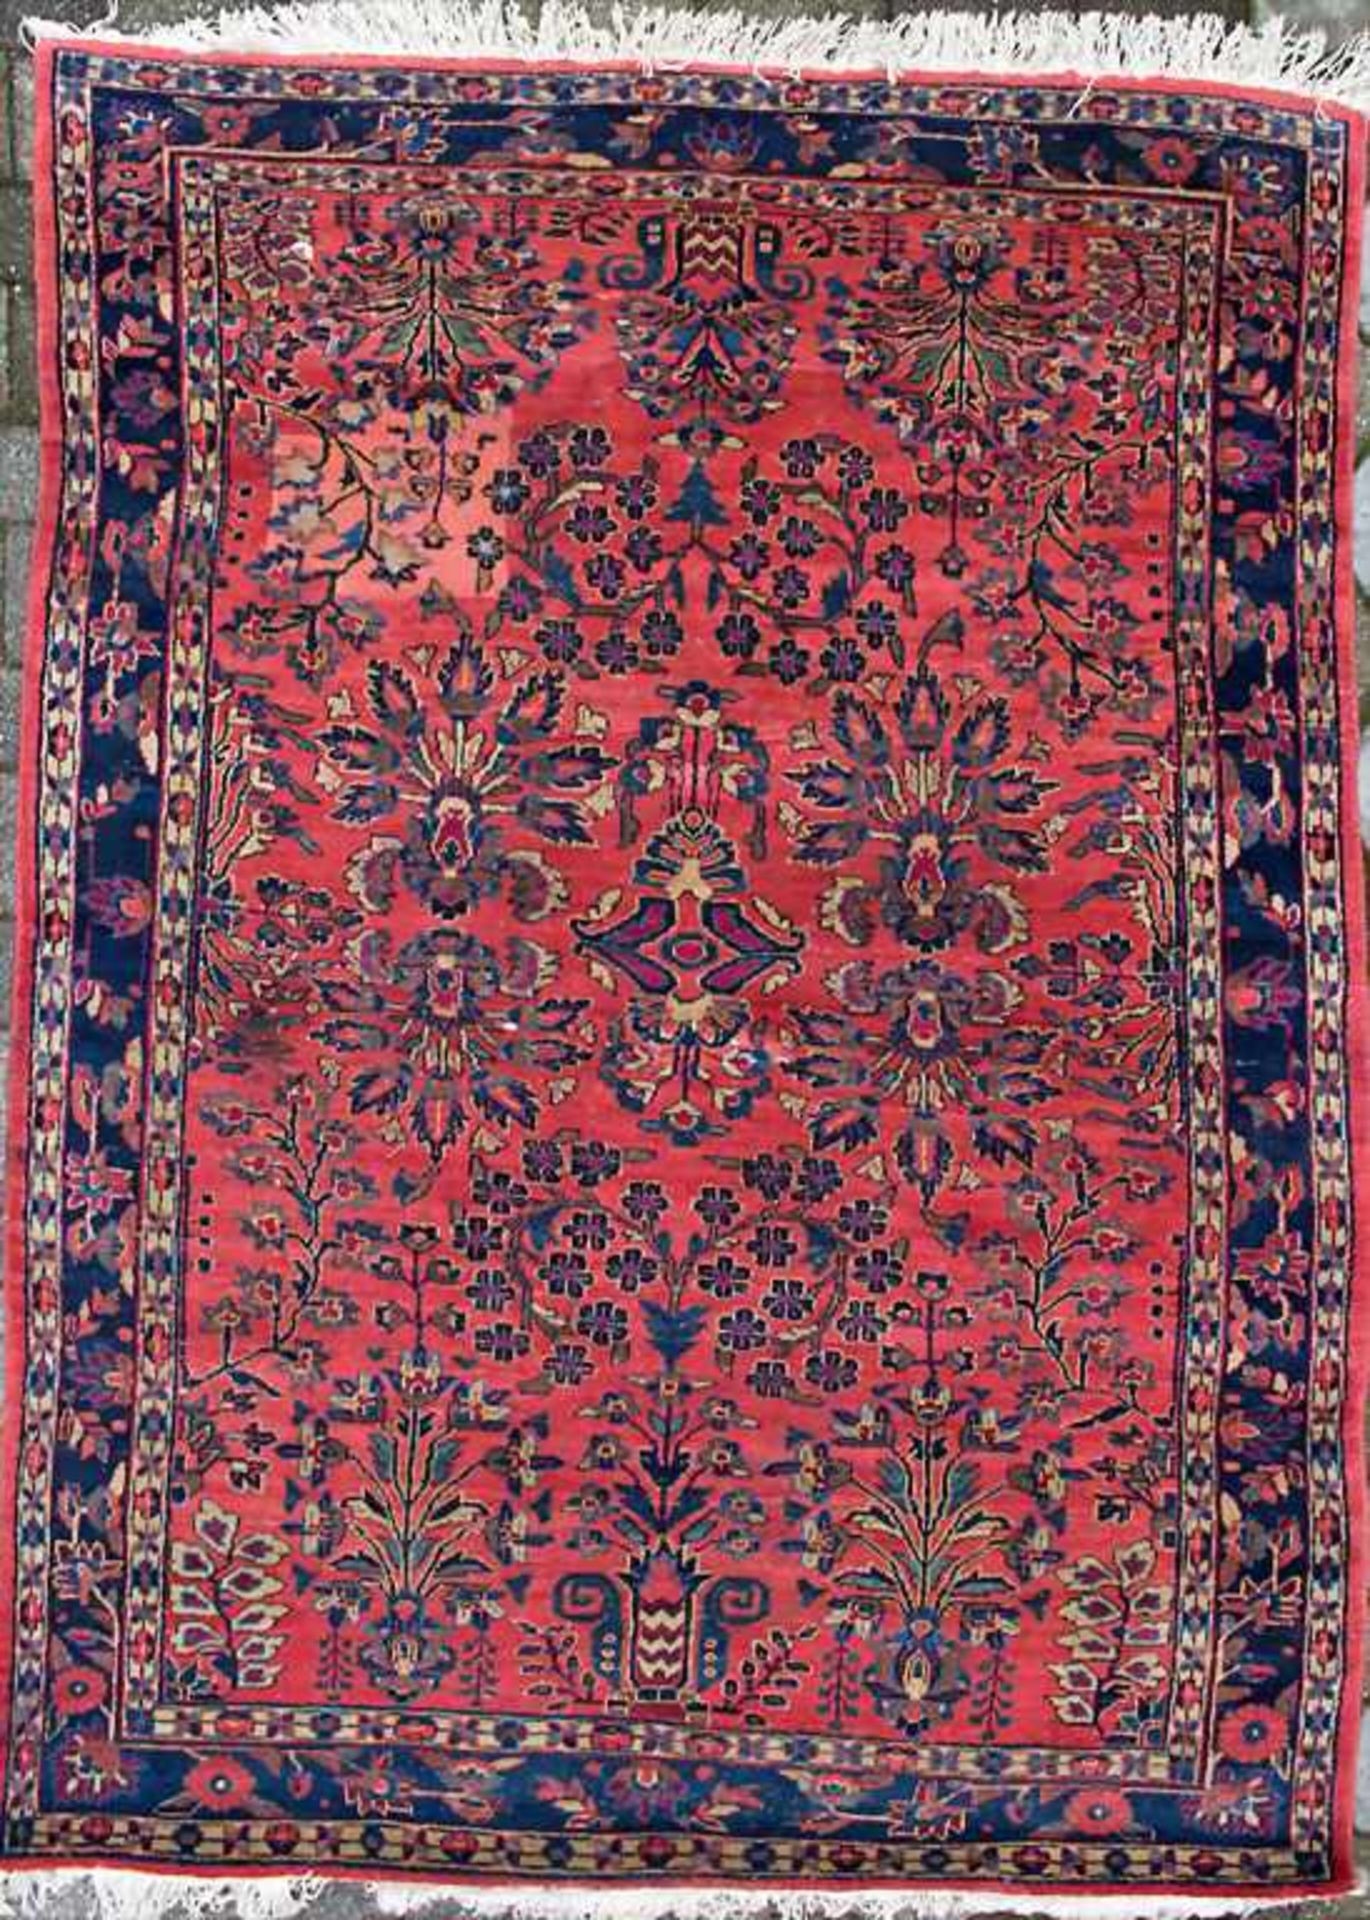 Orientteppich 'Saruk' / An oriental carpet 'Saruk'Material: Wolle auf Baumwolle, Maße: 200 x 140 cm,